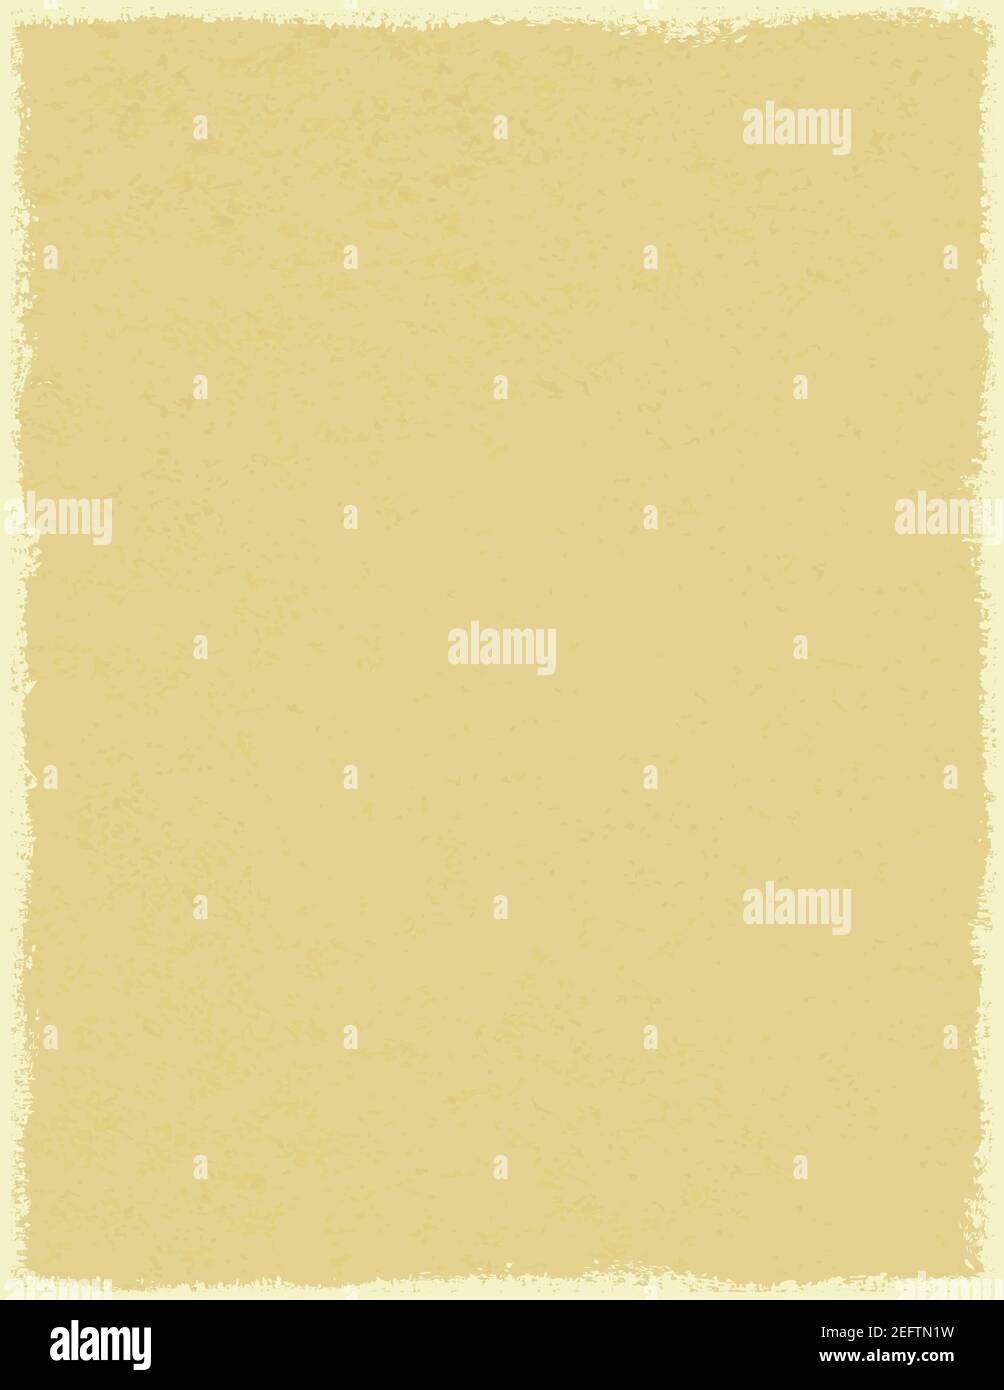 Format lettre proportion ancien cadre d'image grunge style de papier délavé, cadre vertical Illustration de Vecteur